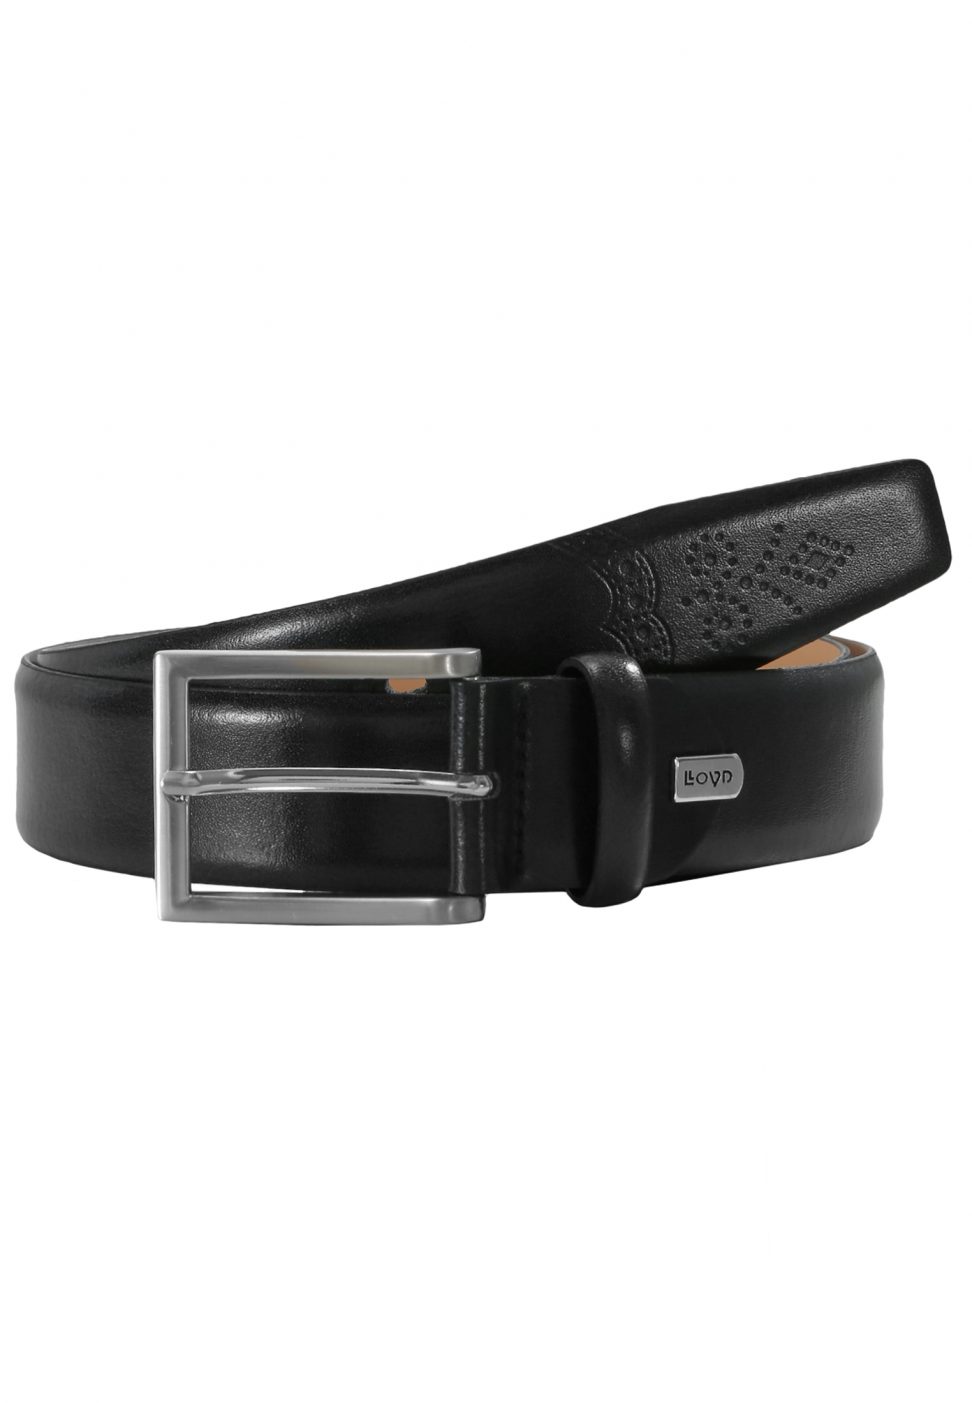 LLOYD Men's Belts Pasek Skórzany 1080/5-czarny 3,5 cm